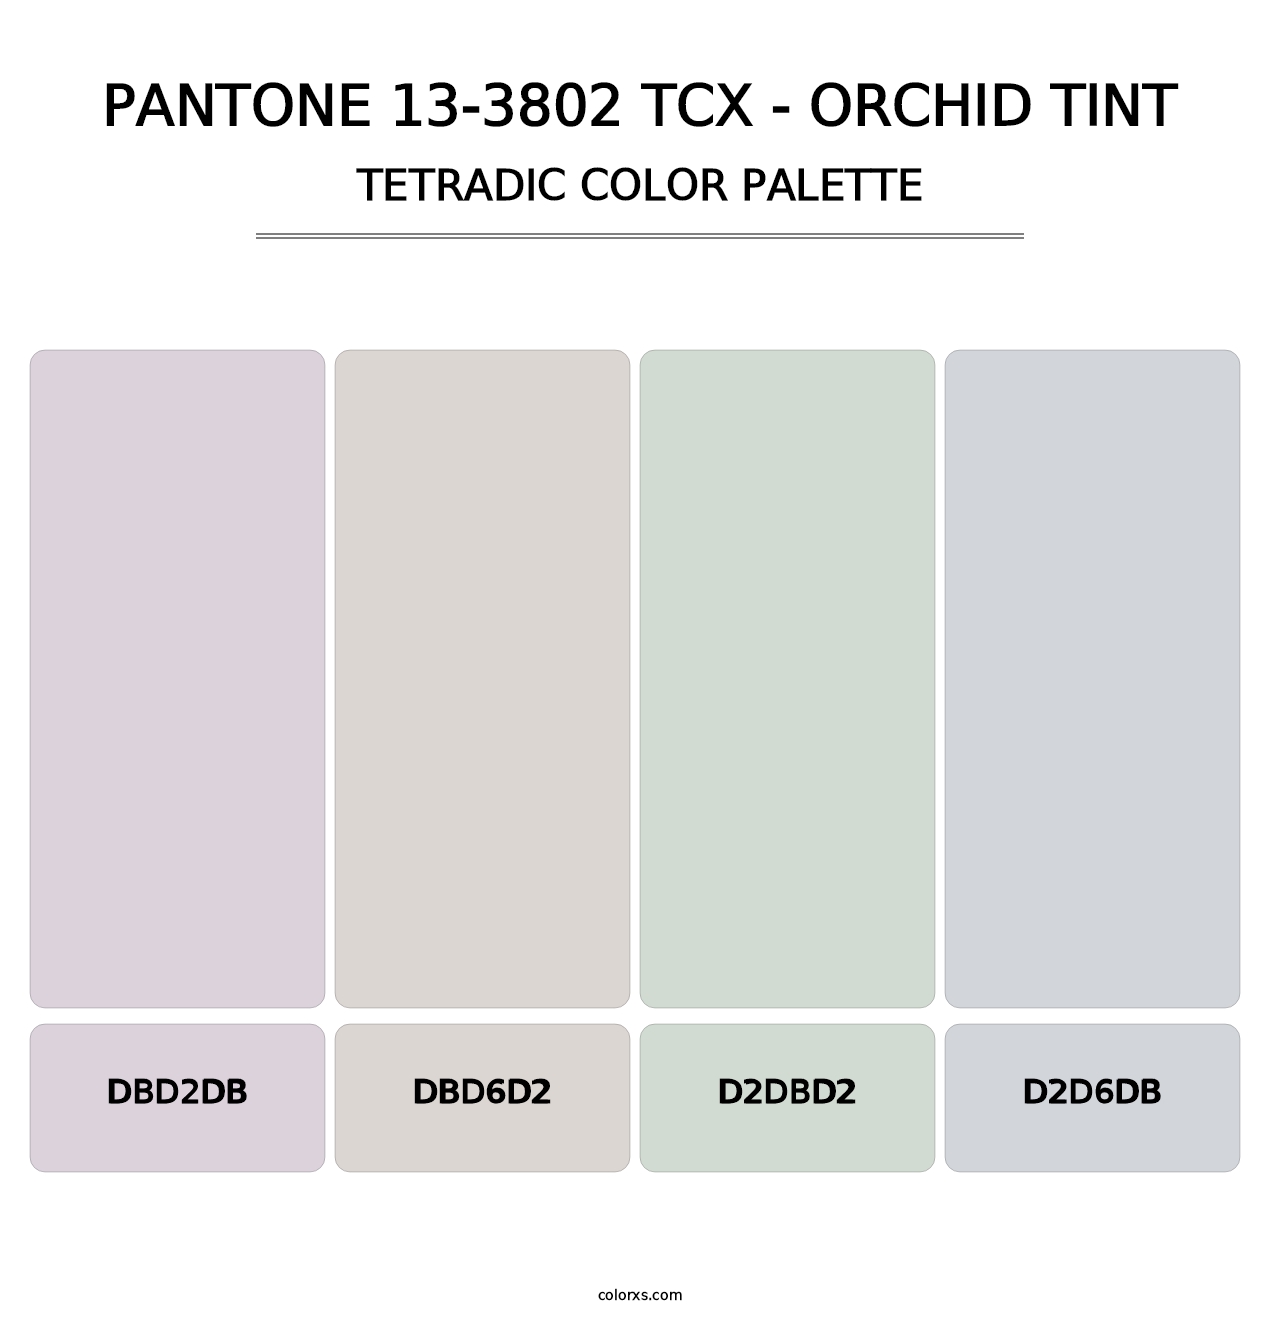 PANTONE 13-3802 TCX - Orchid Tint - Tetradic Color Palette